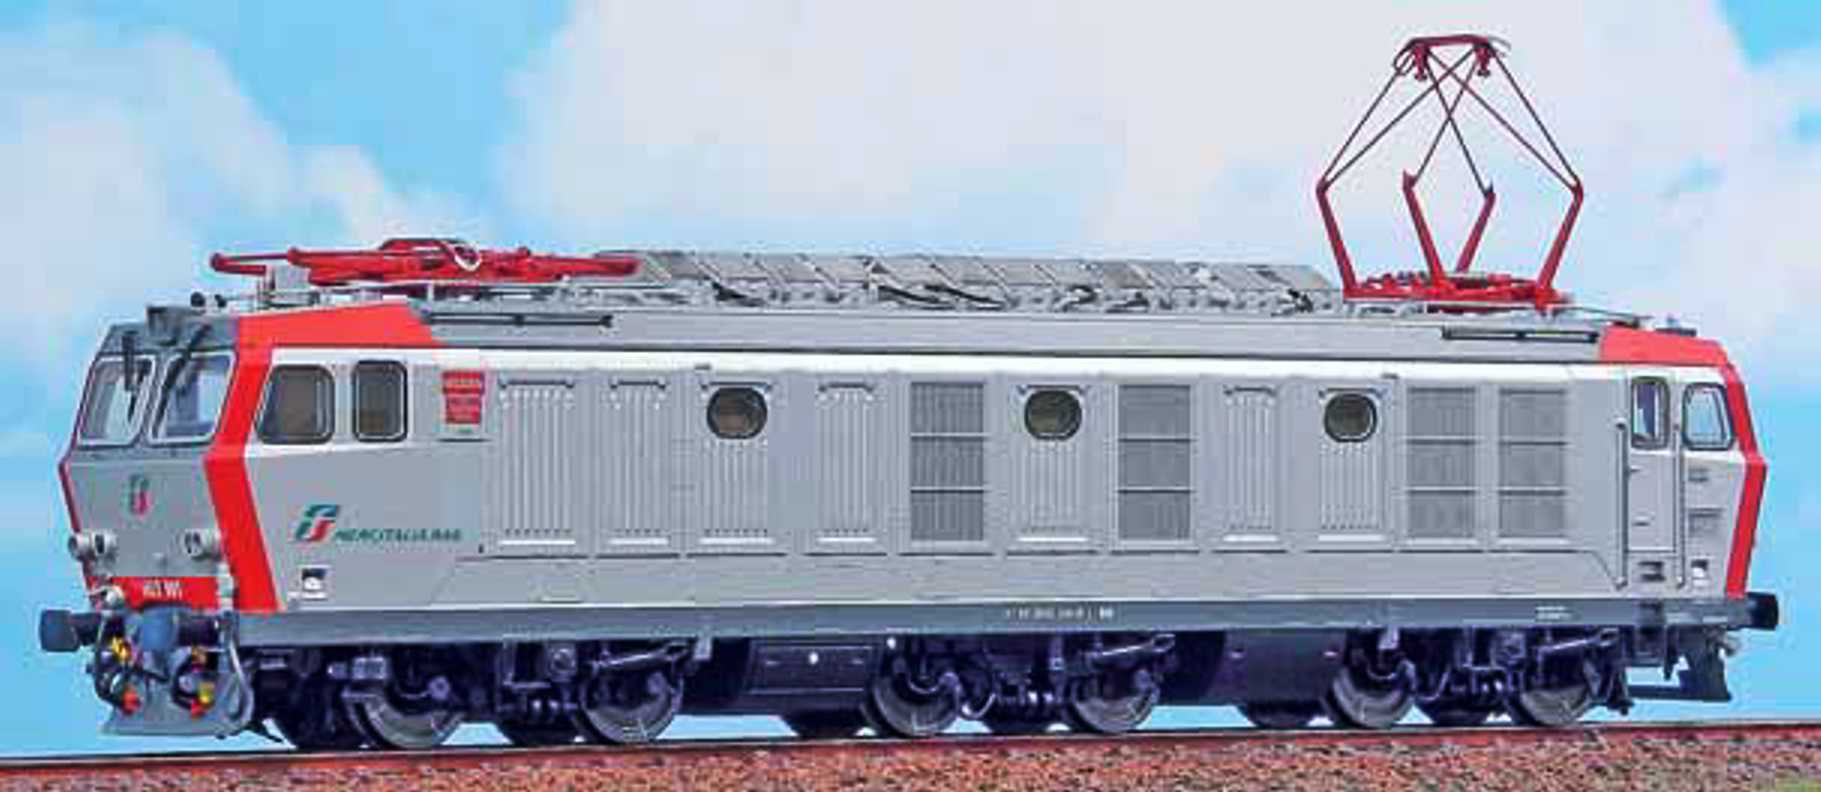 買い限定アクメ ACME 60431 locomotiva E 636 080 Epoca V A.C.M.E HOゲージ 鉄道模型 海外 列車 電車 車両 中古 良好 M6514562 JR、国鉄車輌